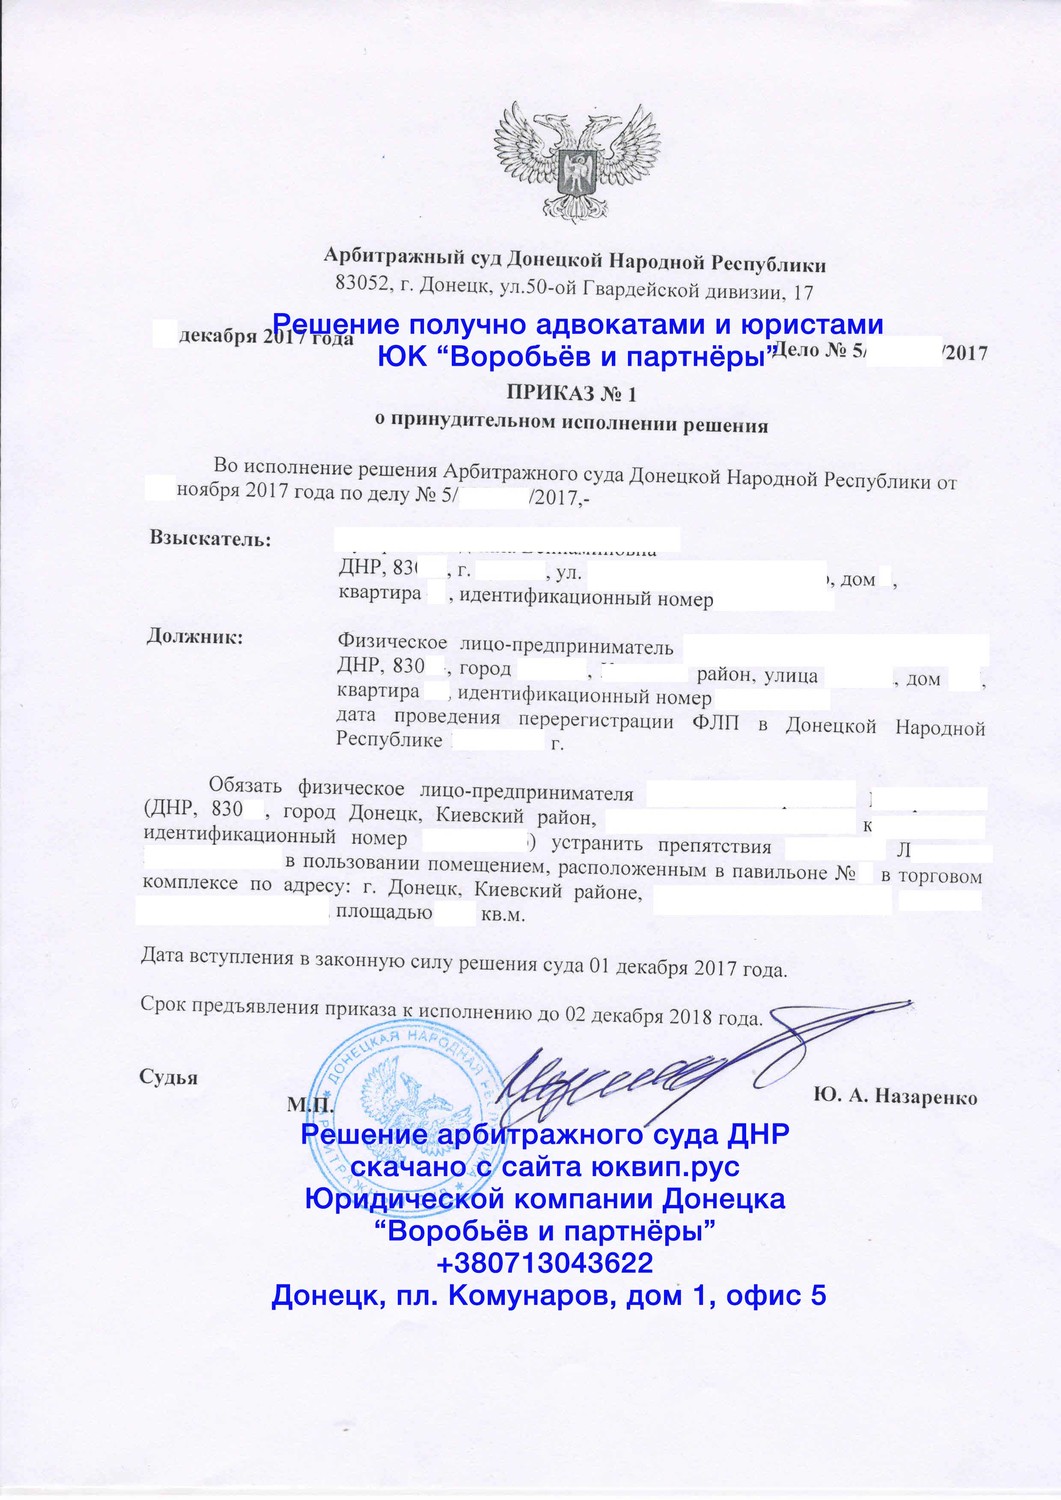 Решение арбитражного суда Донецка ДНР